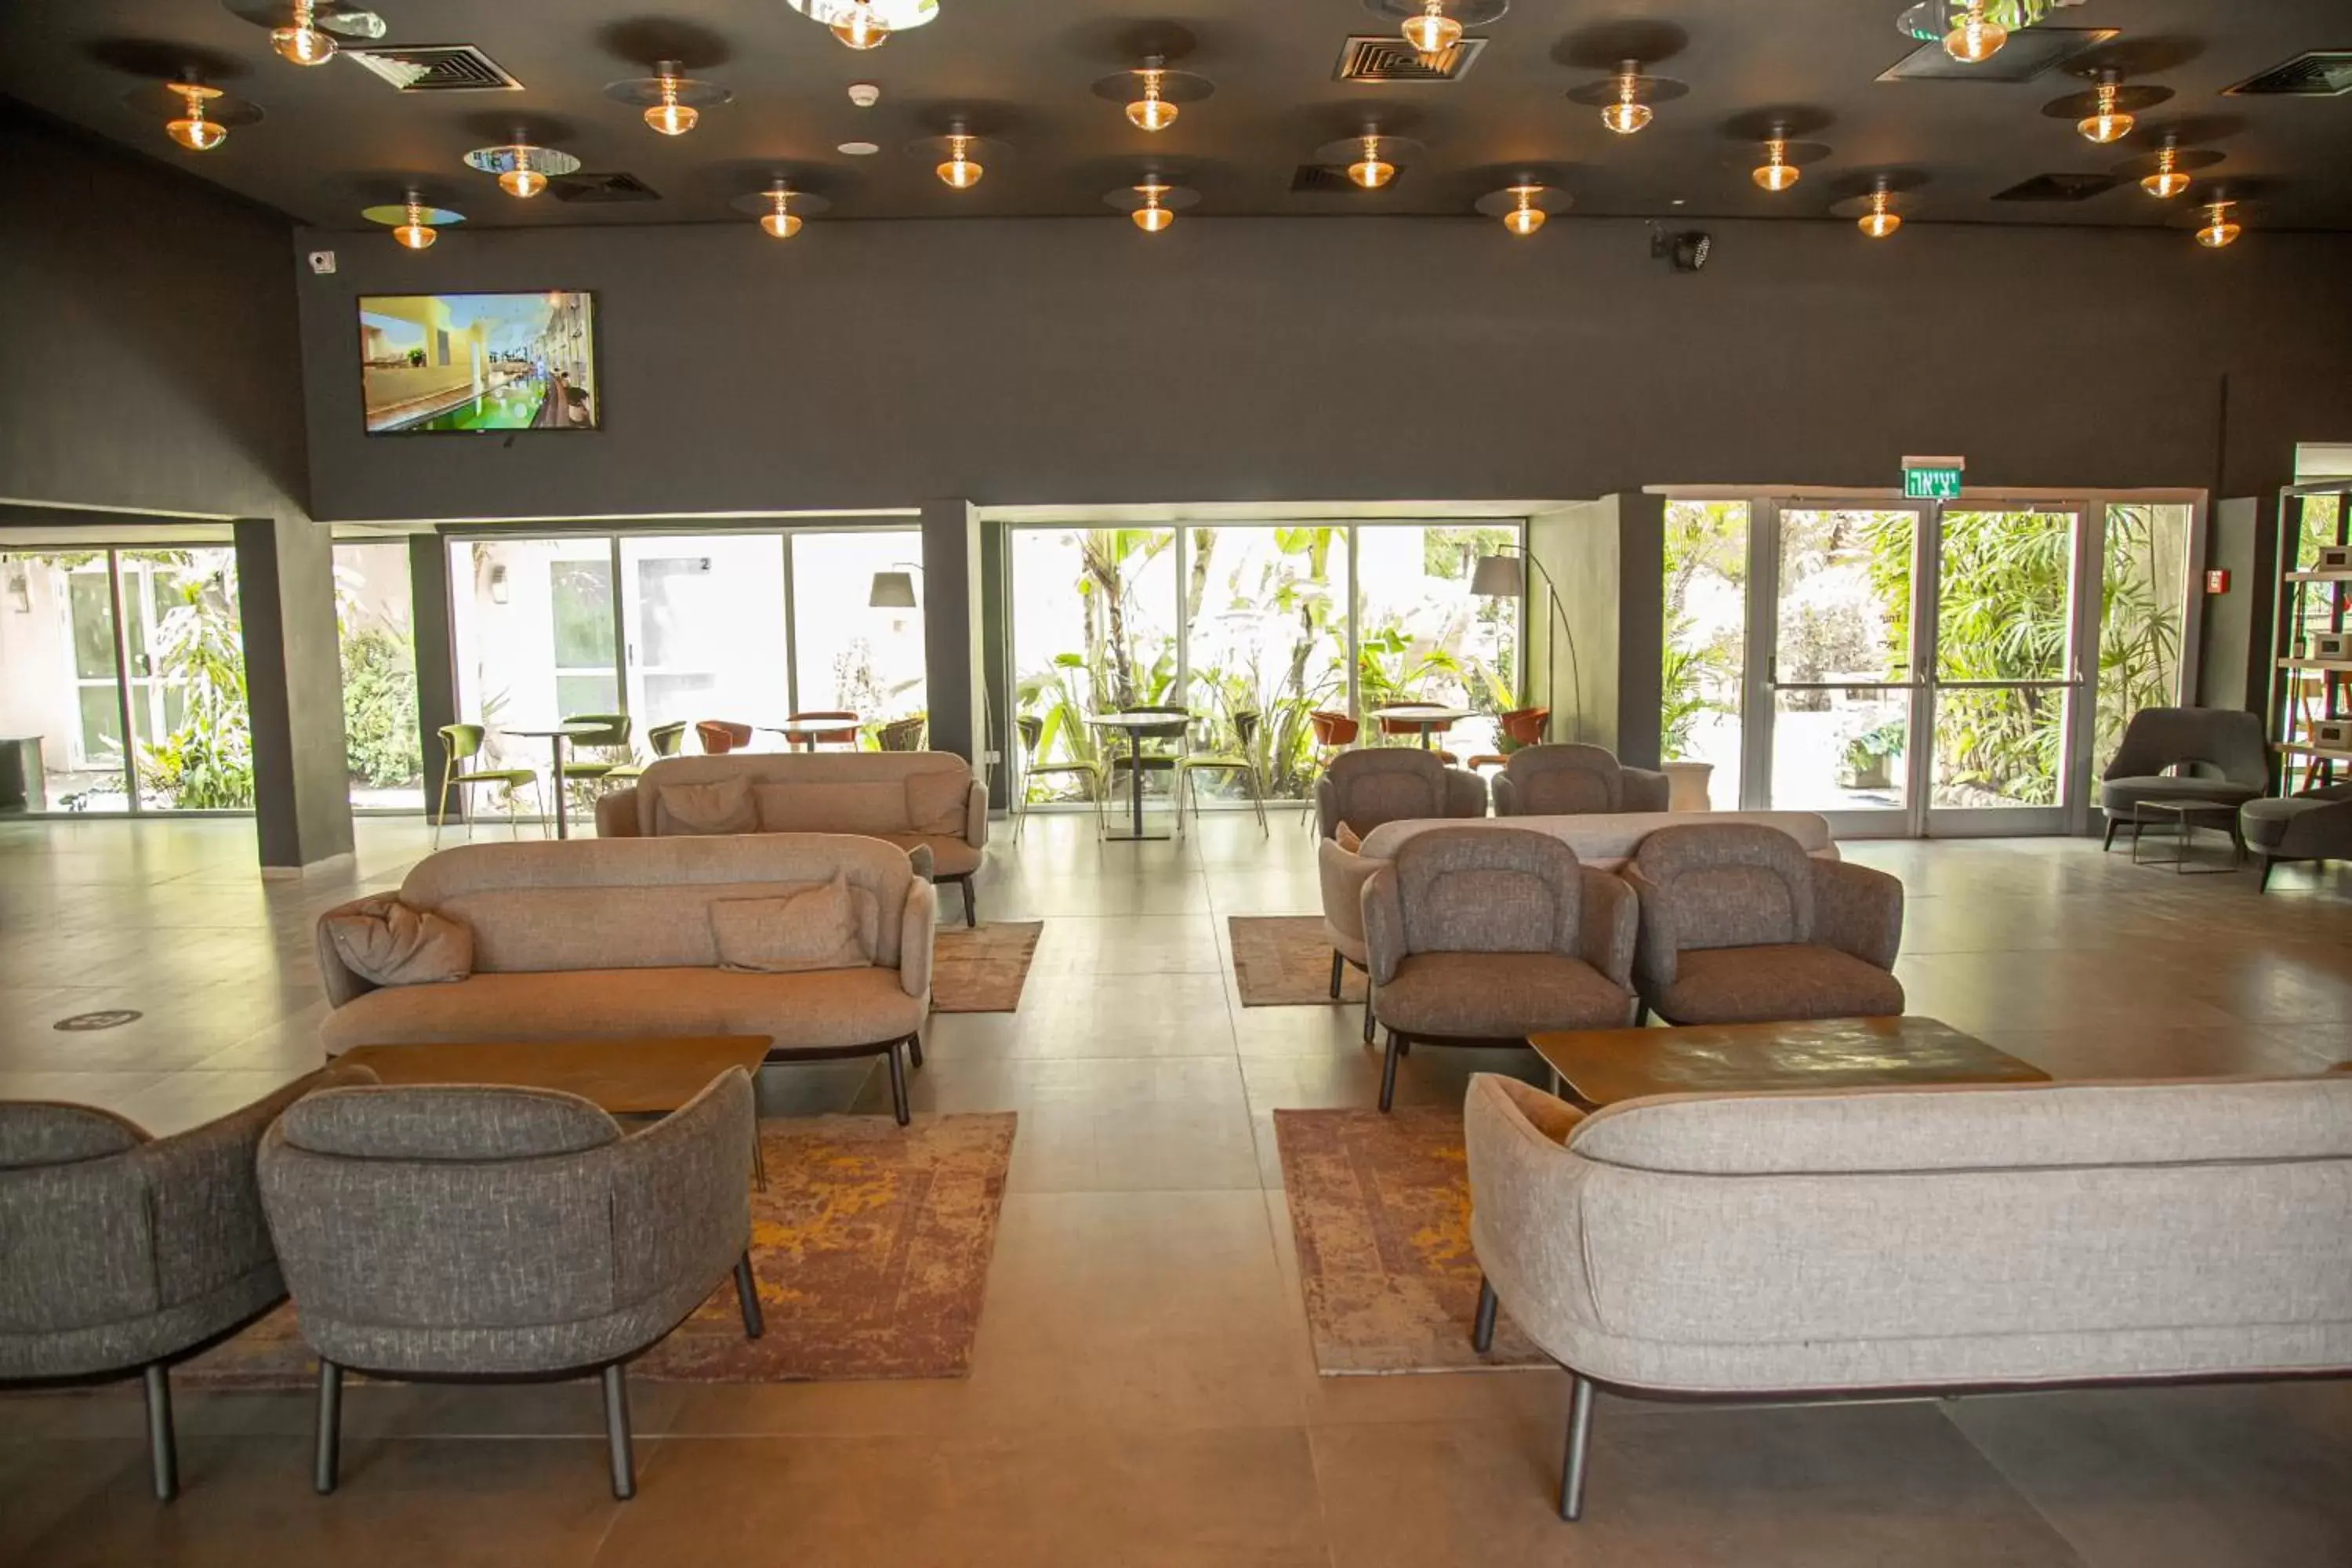 Lobby or reception, Lobby/Reception in Ein Gedi Kibbutz Hotel